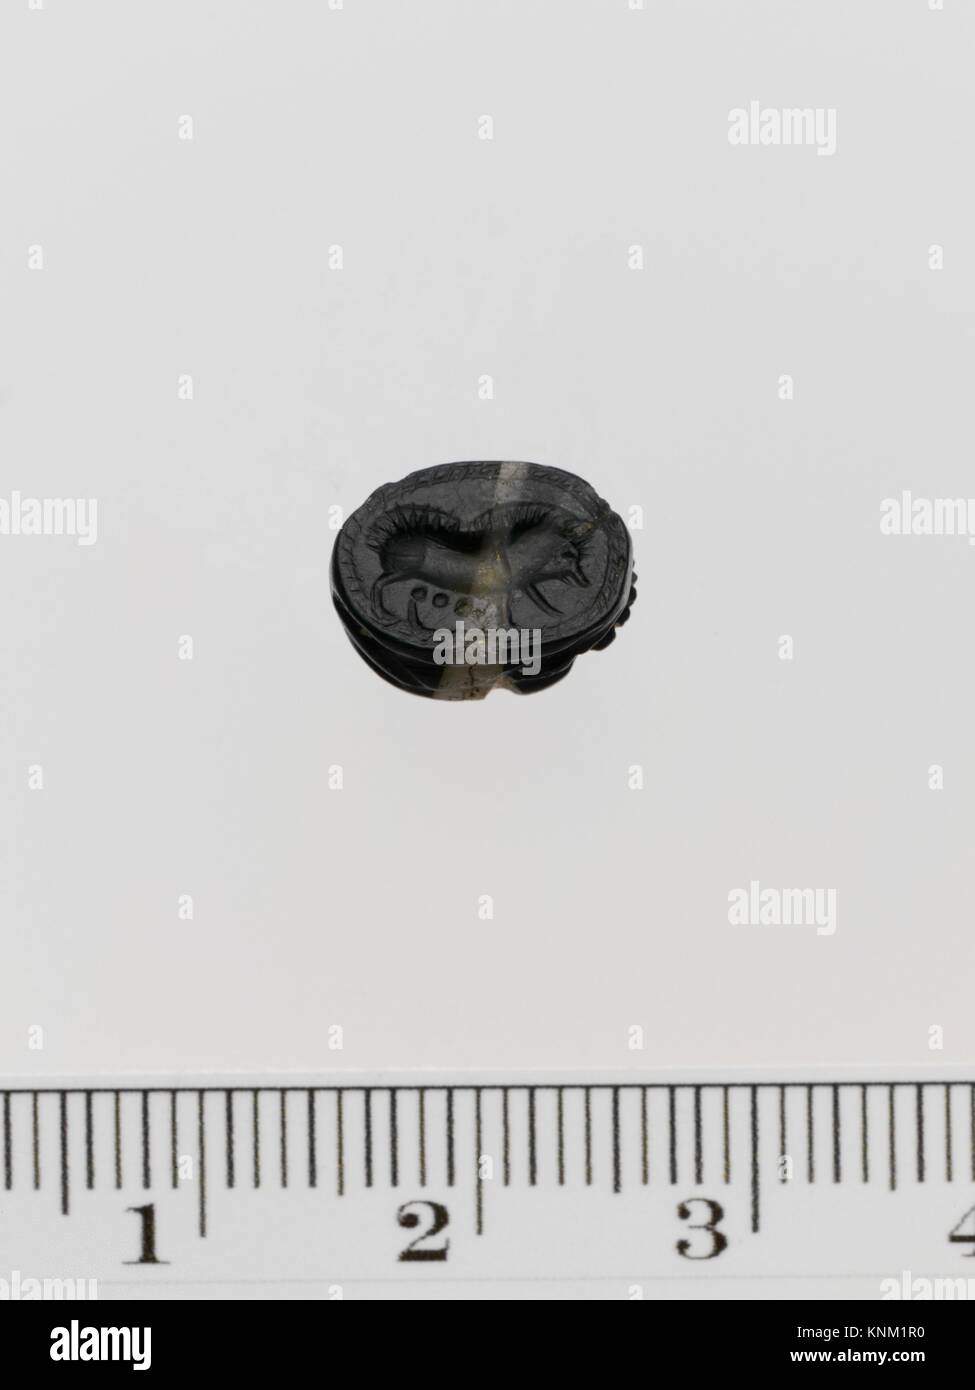 Escarabajo de ágata. Período: Arcaico; Fecha: ca. 6to siglo B.C; Cultura: Griego; Media: Ágata, verde y blanco; Dimensiones: Longitud: 3/8 pulg. (1 cm); Foto de stock